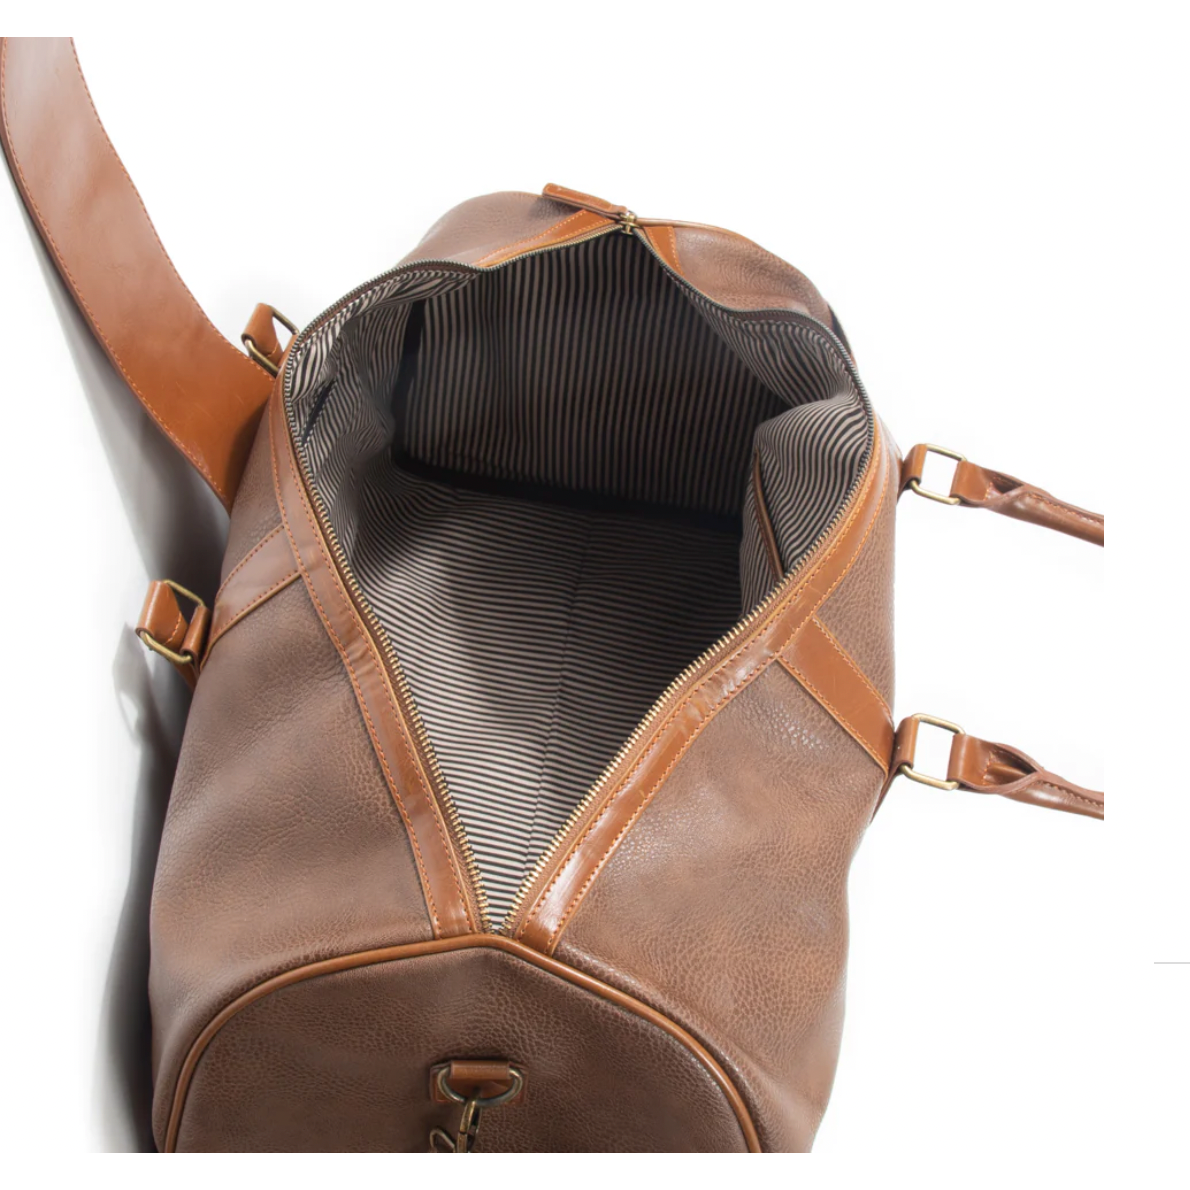 Oxford Duffel Bag: Brown